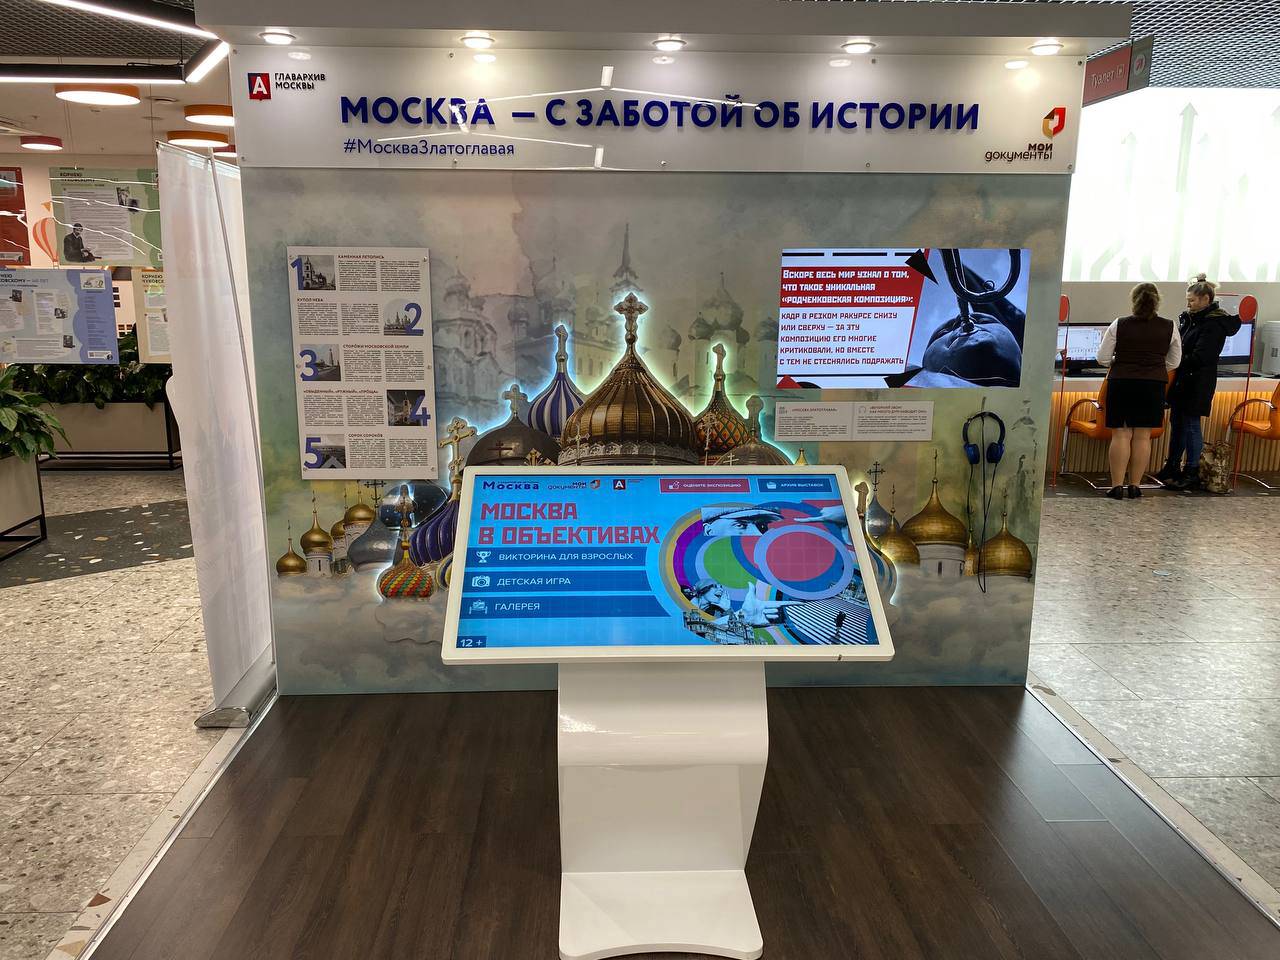 Москва златоглавая выставка о храмах и церквях открылась в центрах госуслуг